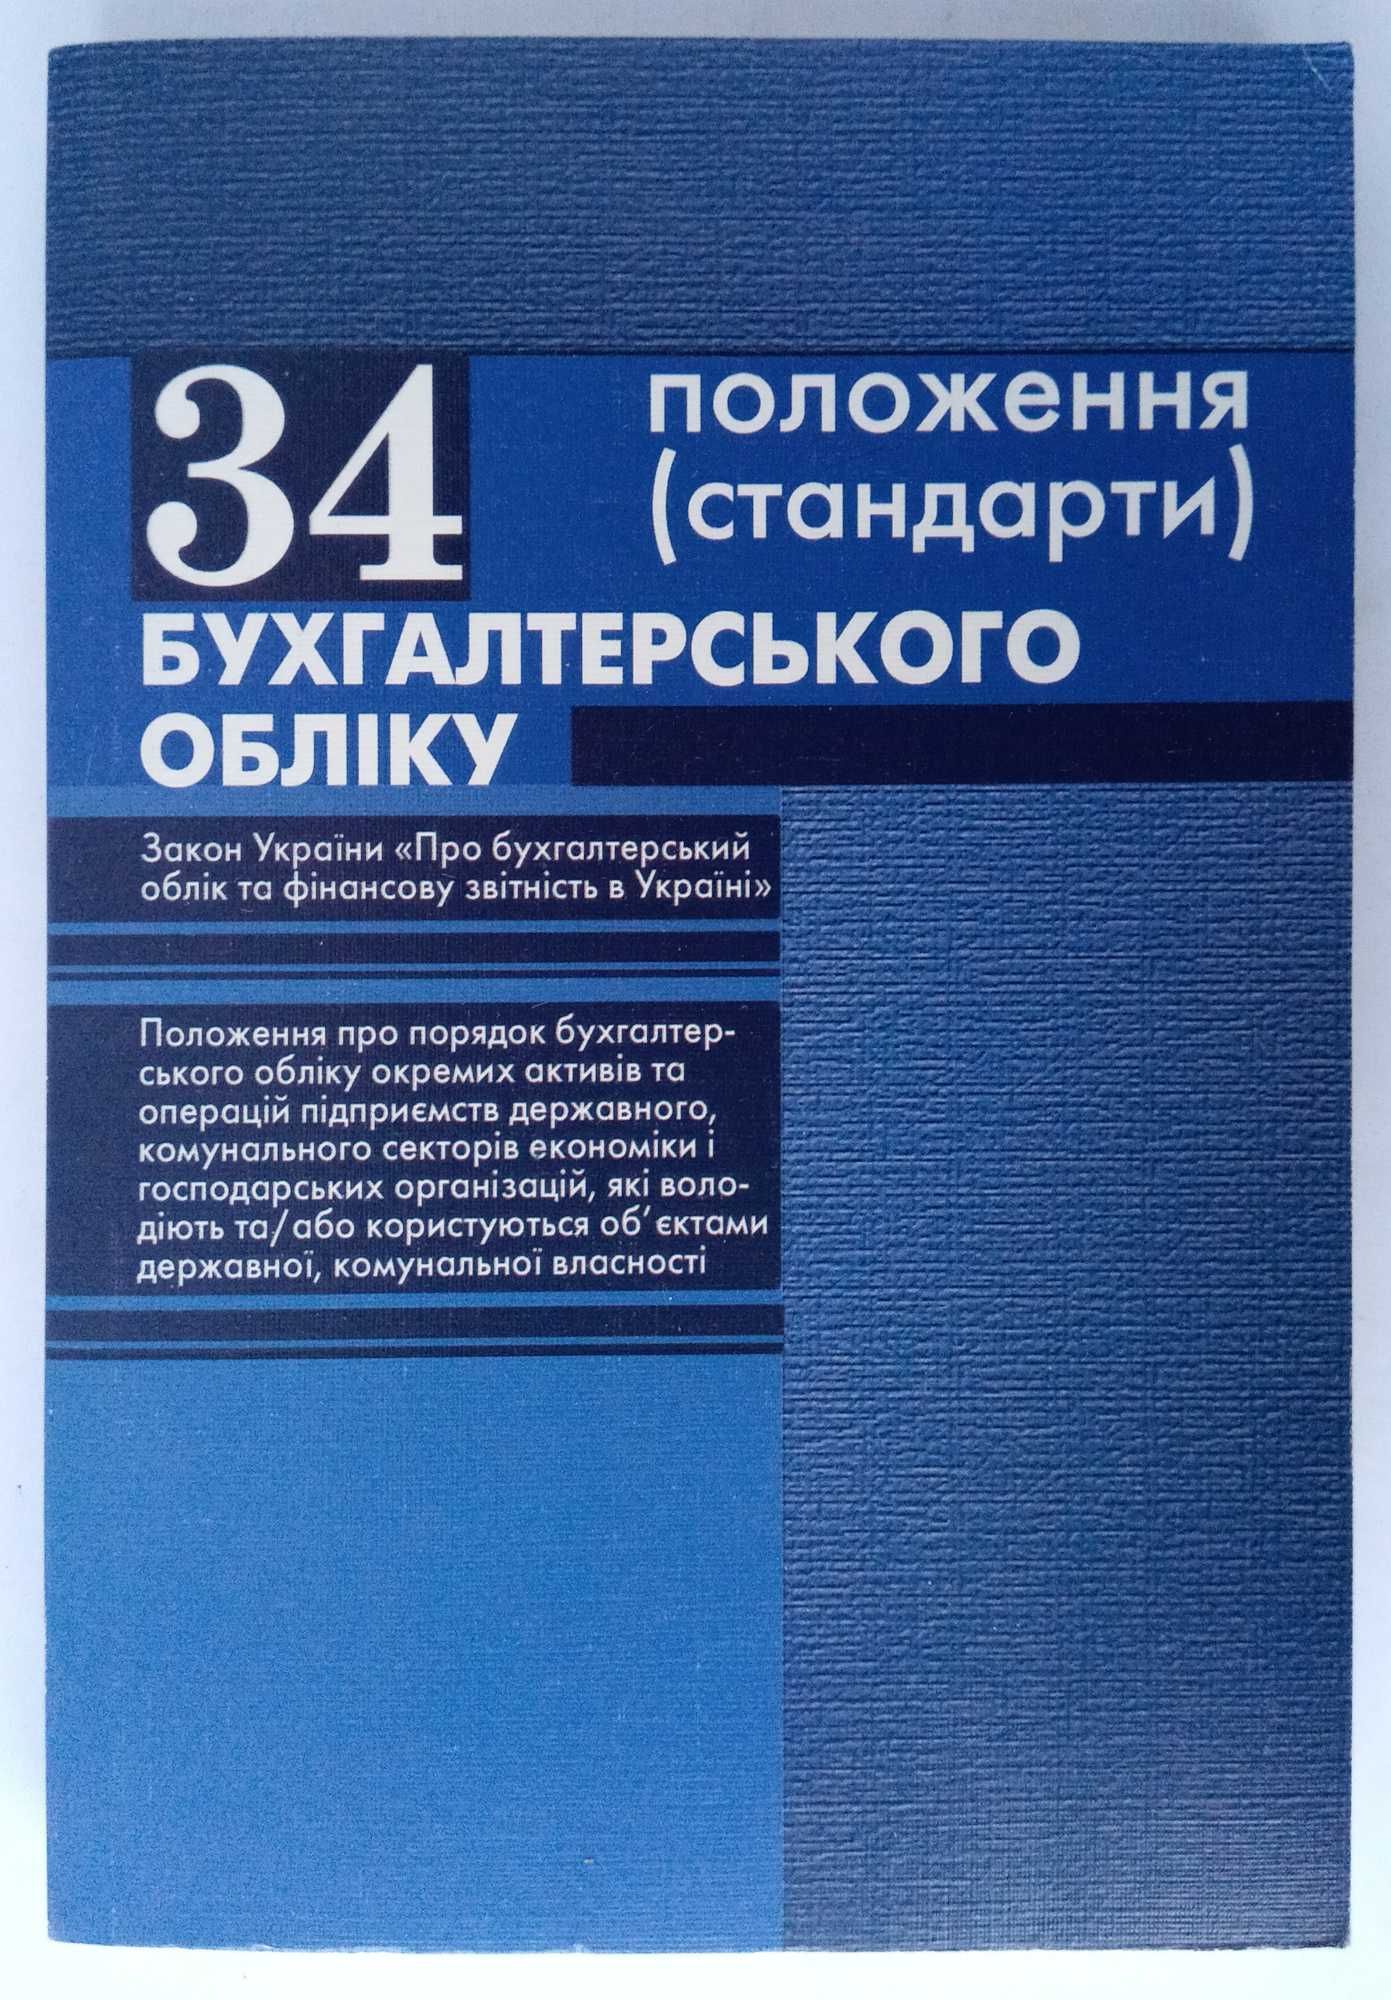 Справочник "34 положення бухгалтерського обліку" 2010